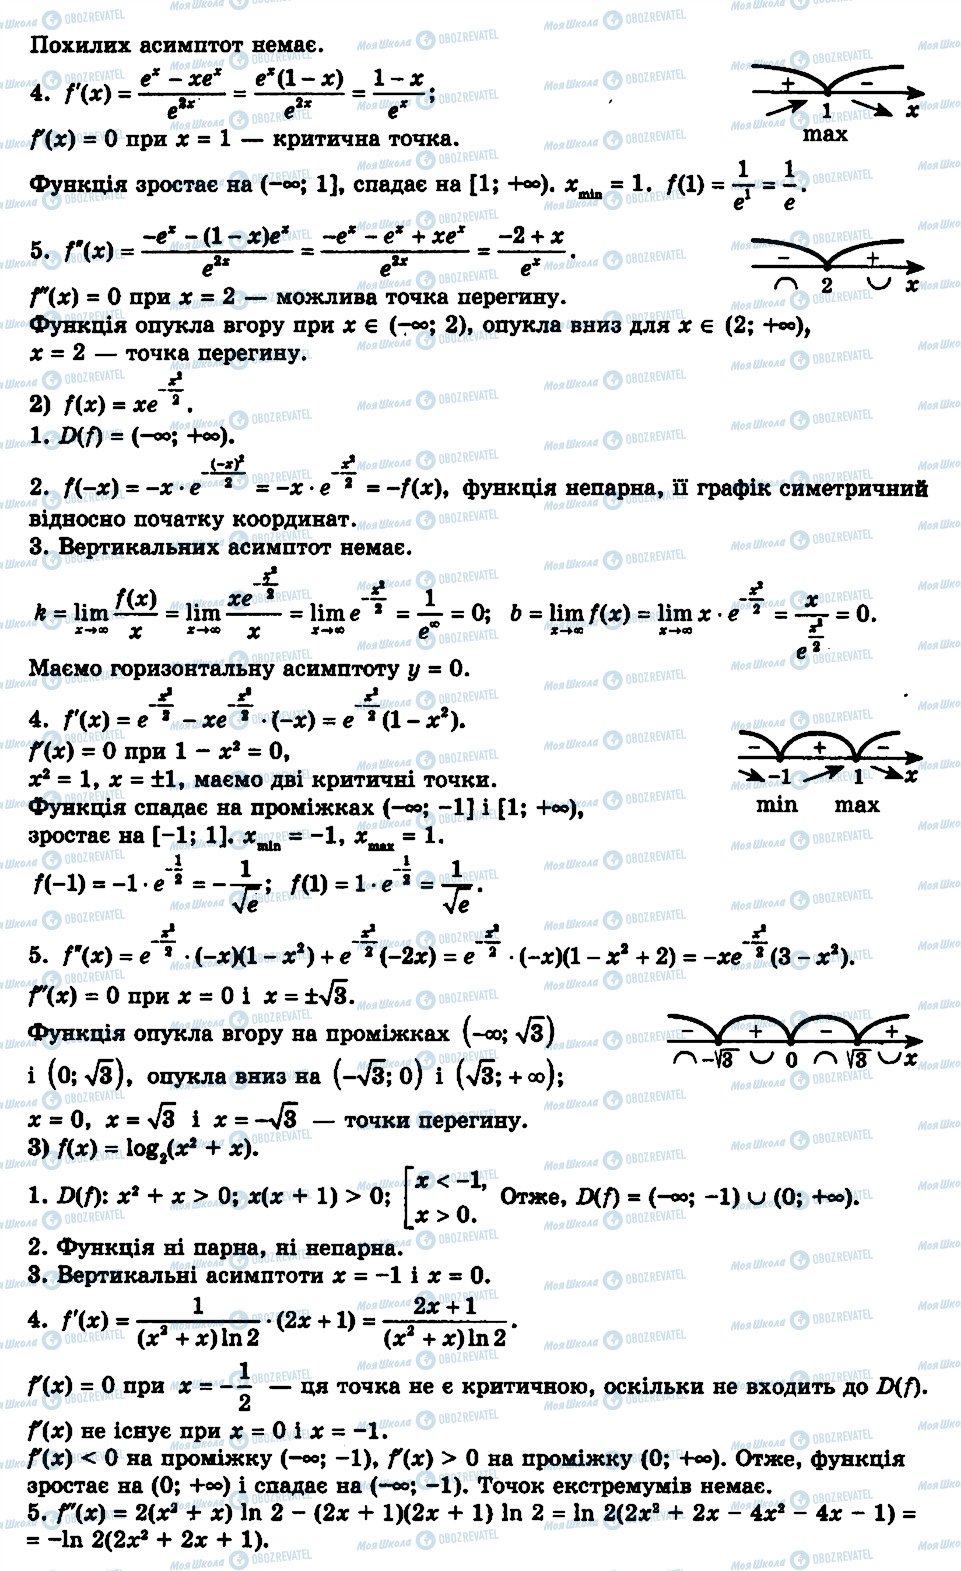 ГДЗ Алгебра 11 класс страница 22